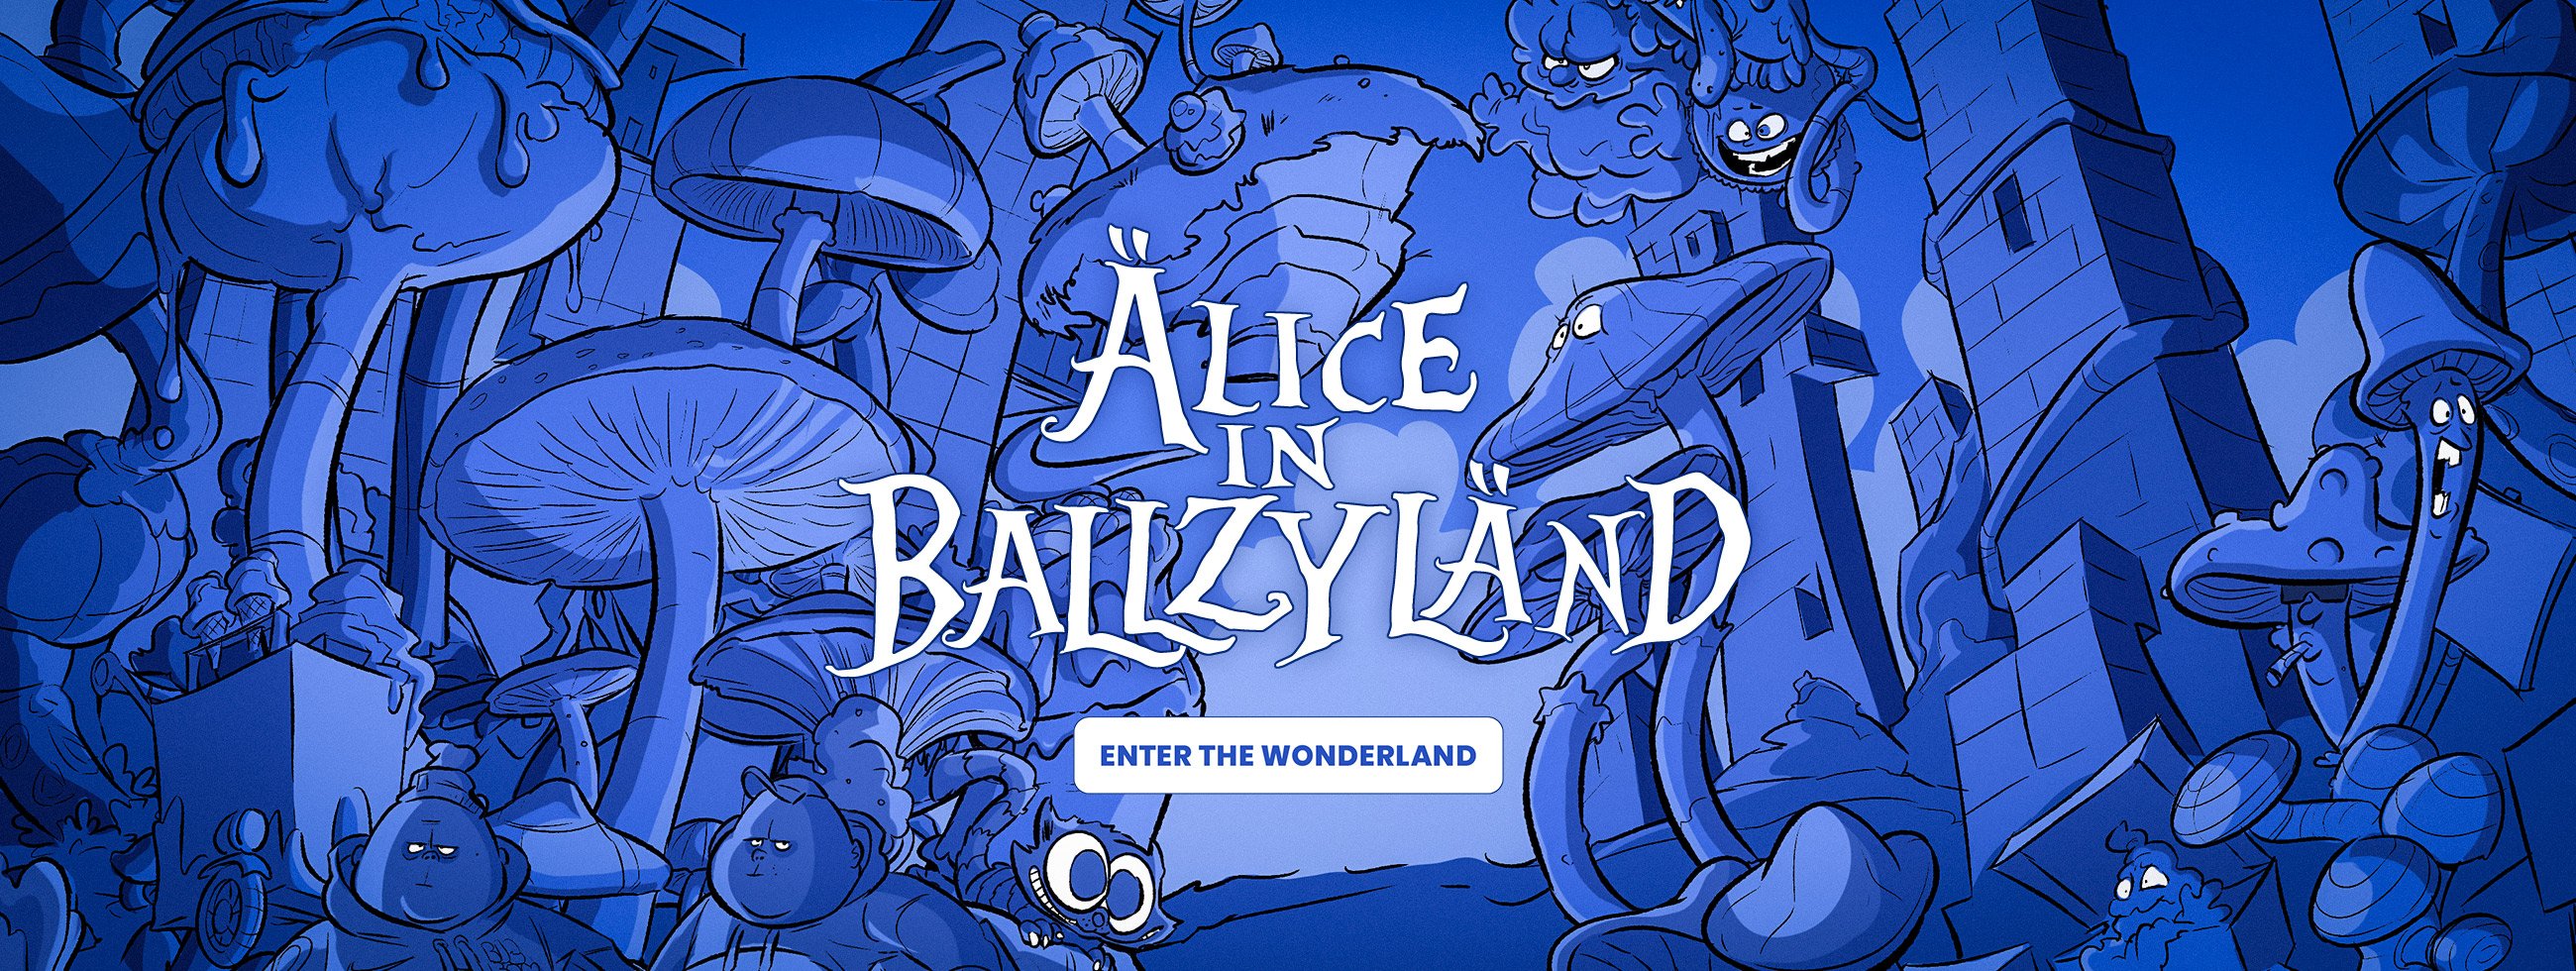 Alice in Ballzyland - LV